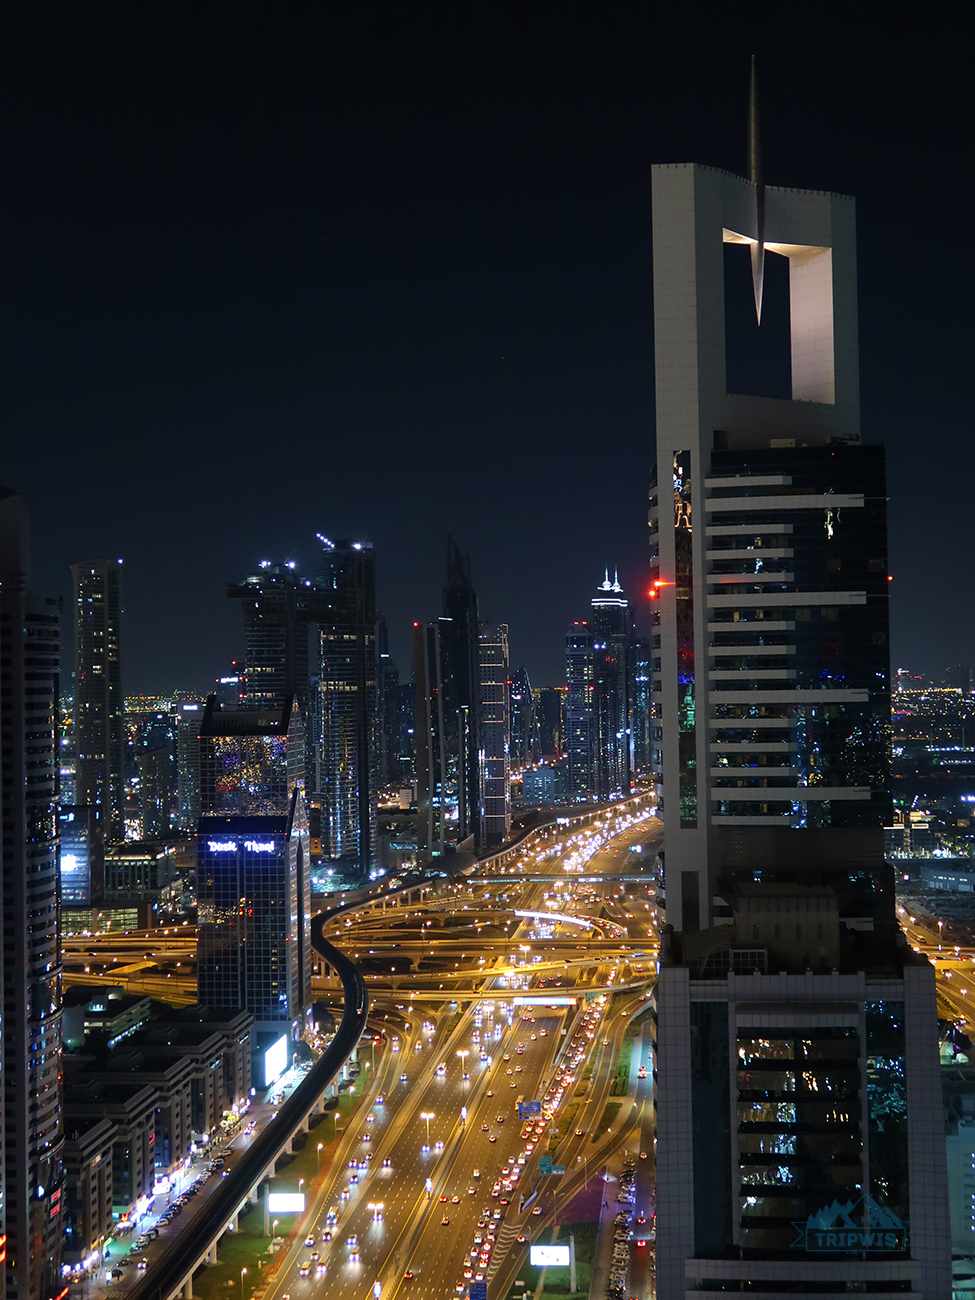 Dubai view at night